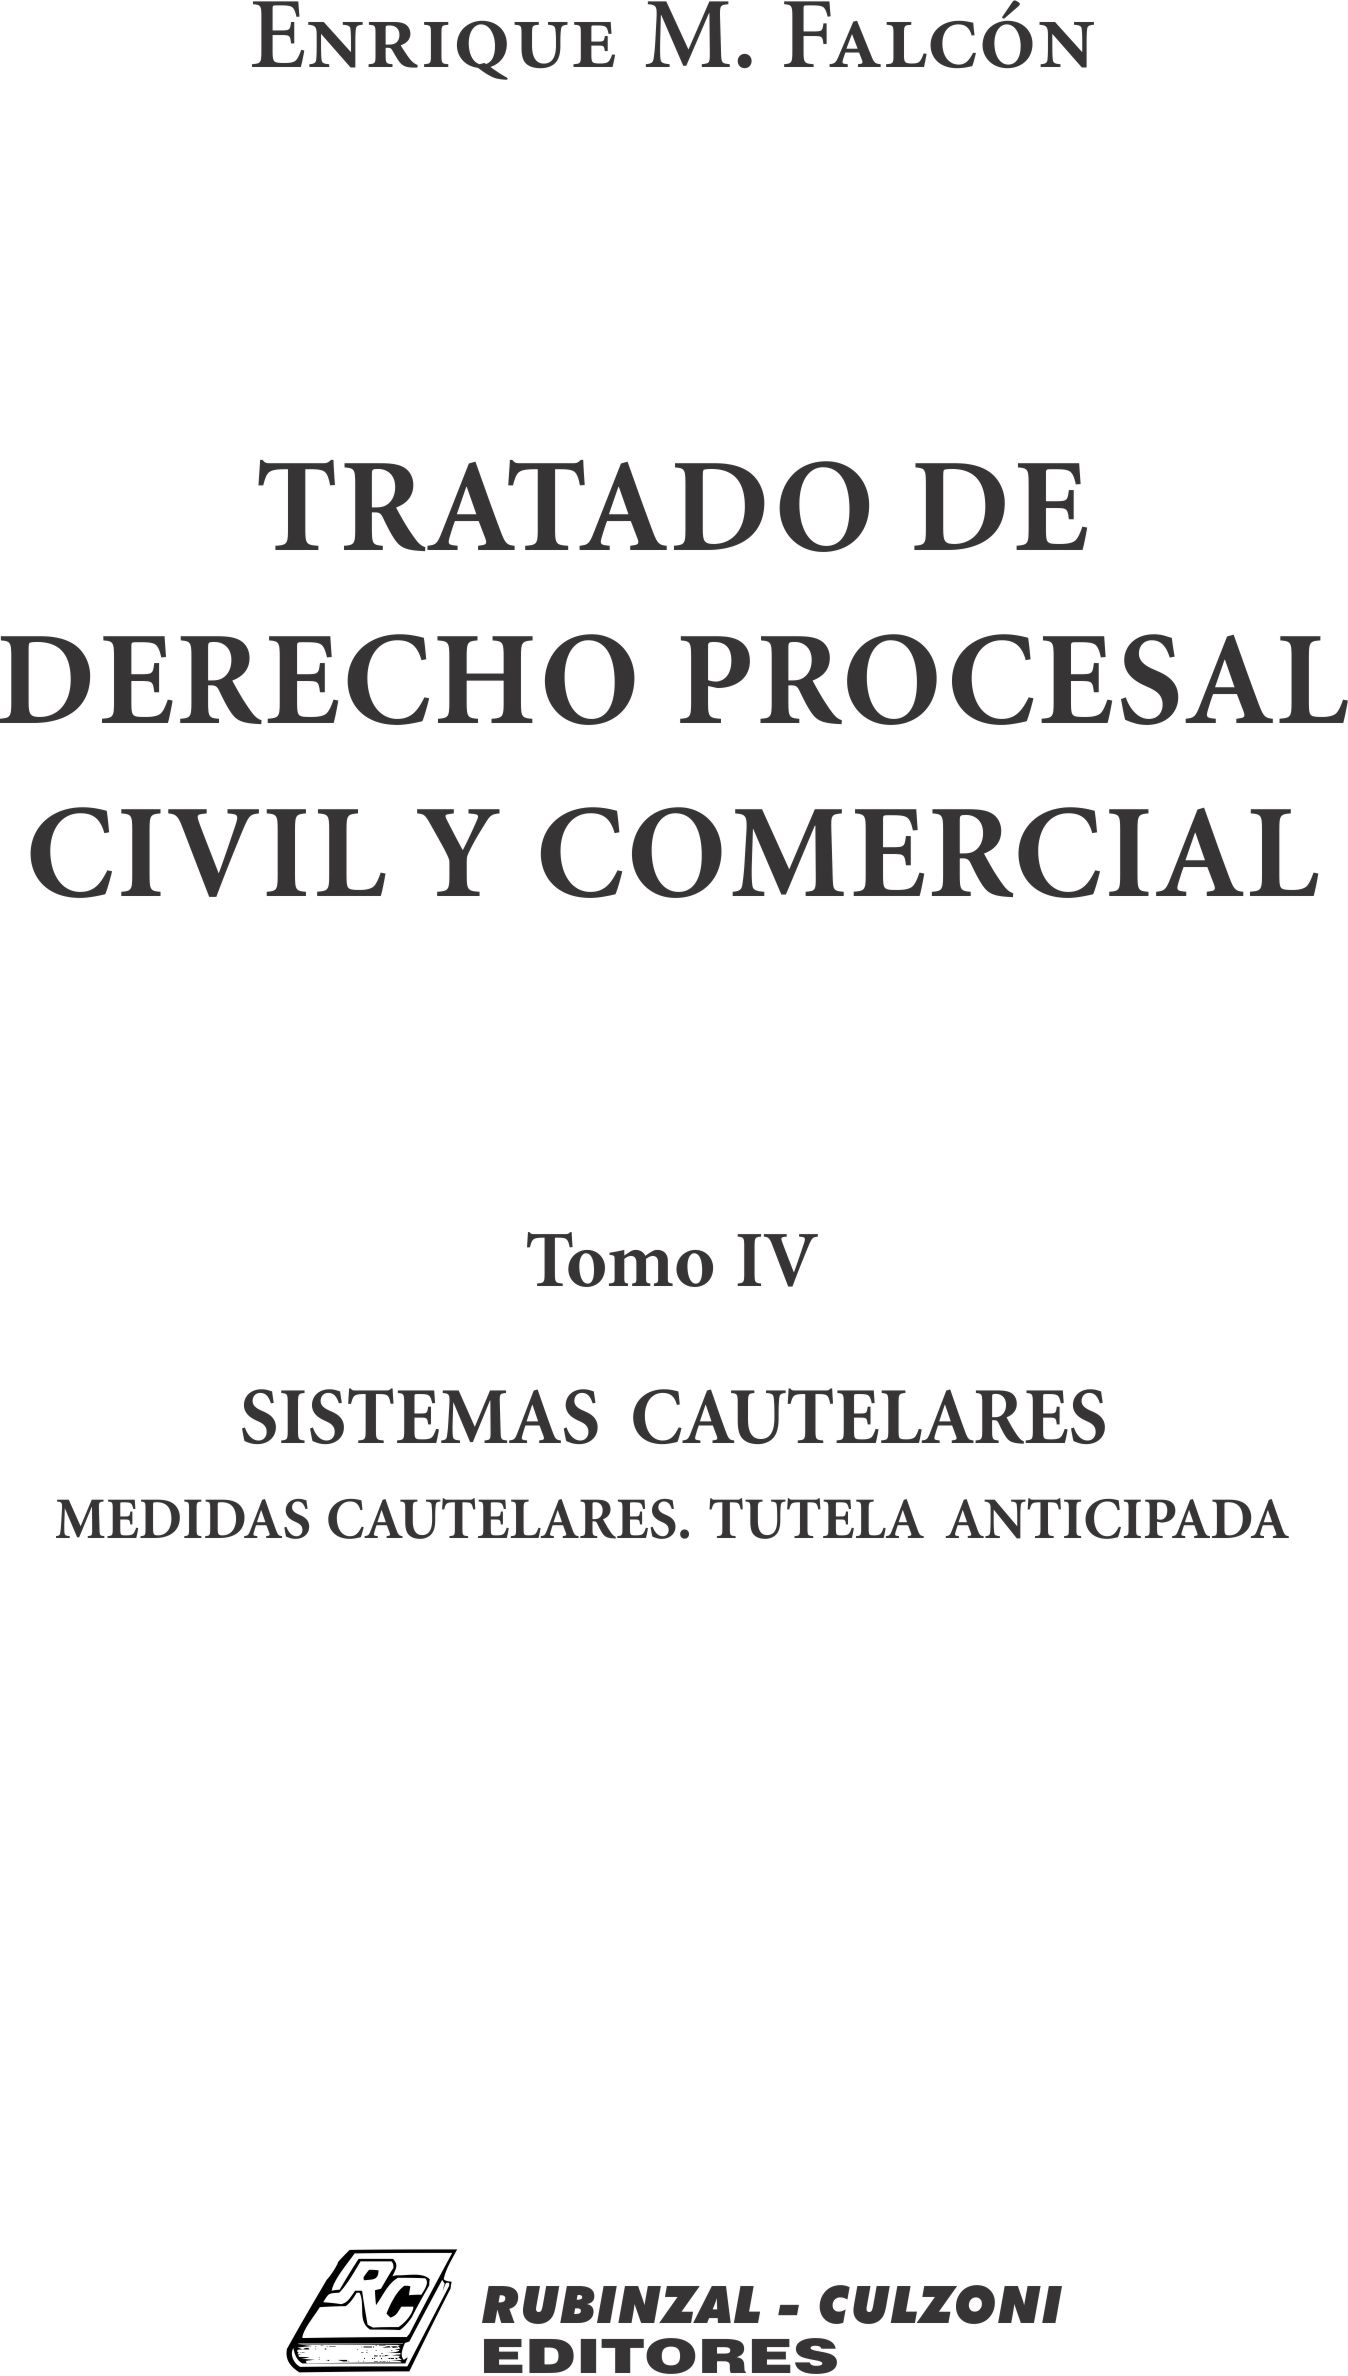 Tratado de Derecho Procesal Civil y Comercial. - Tomo IV. Sistemas Cautelares. Medidas cautelares. Tutela anticipada.